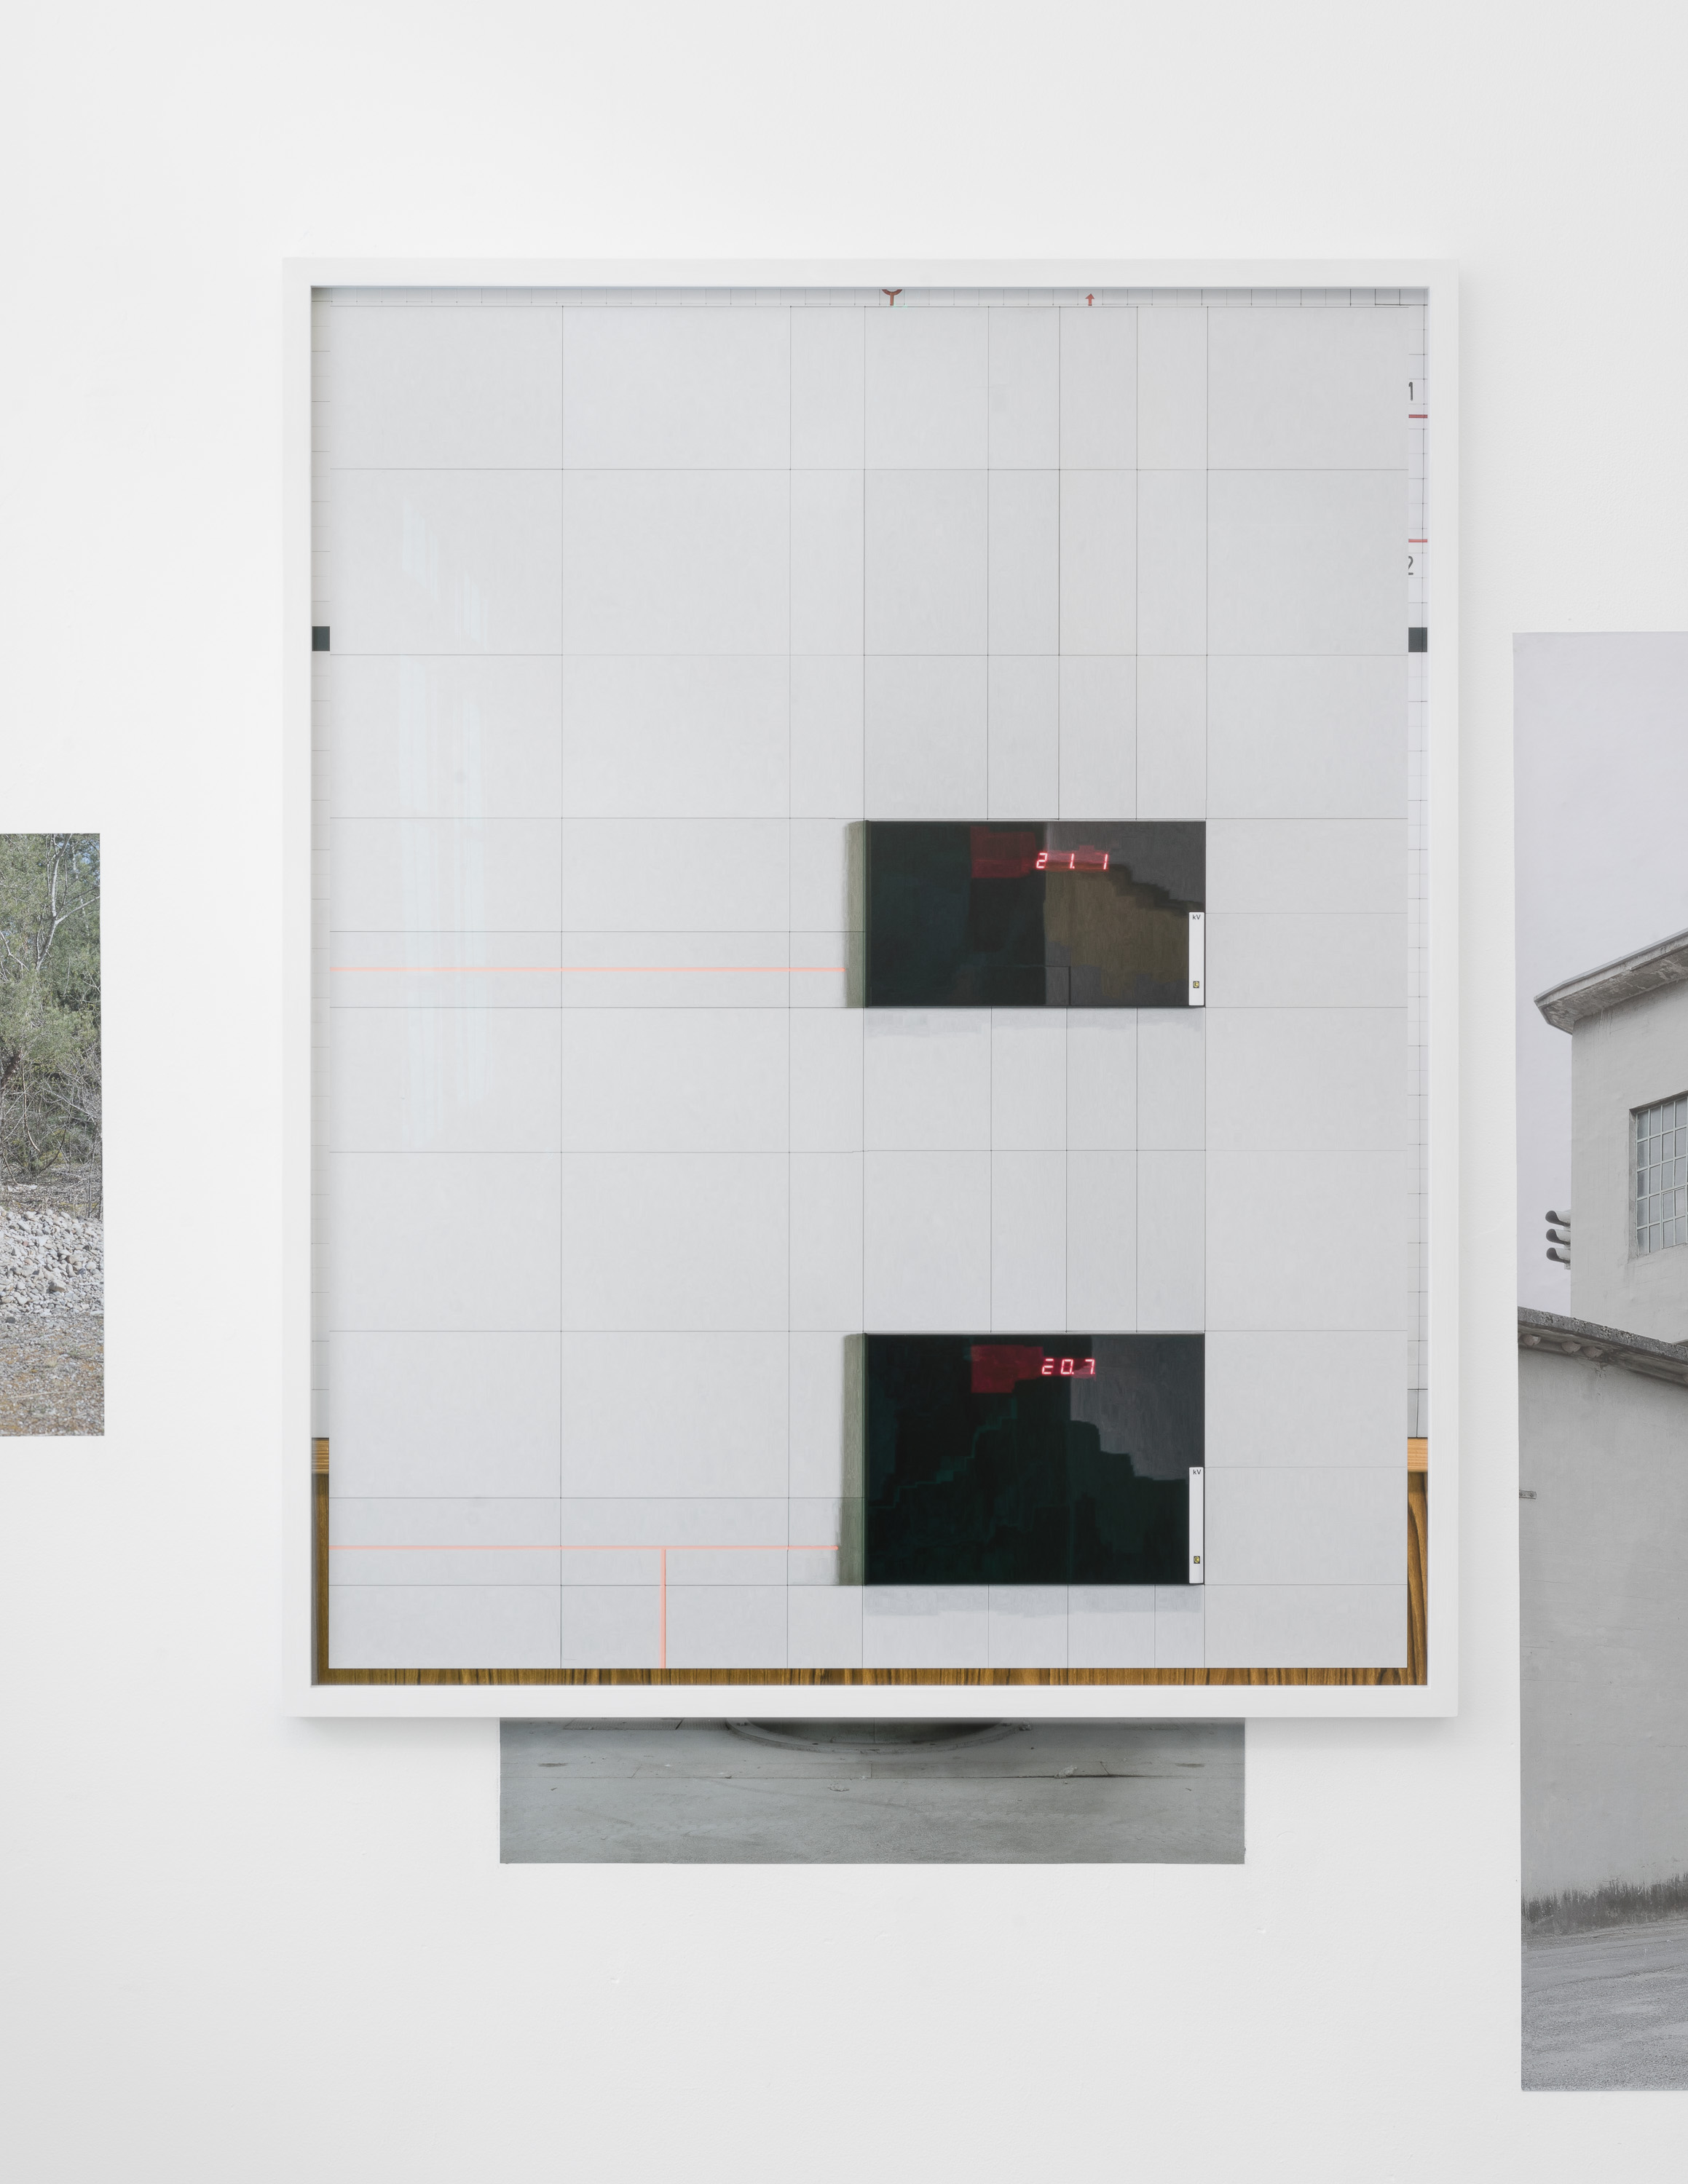  Transform (exhibition view), Galerie Heinzer Reszler, Lausanne, 2016 